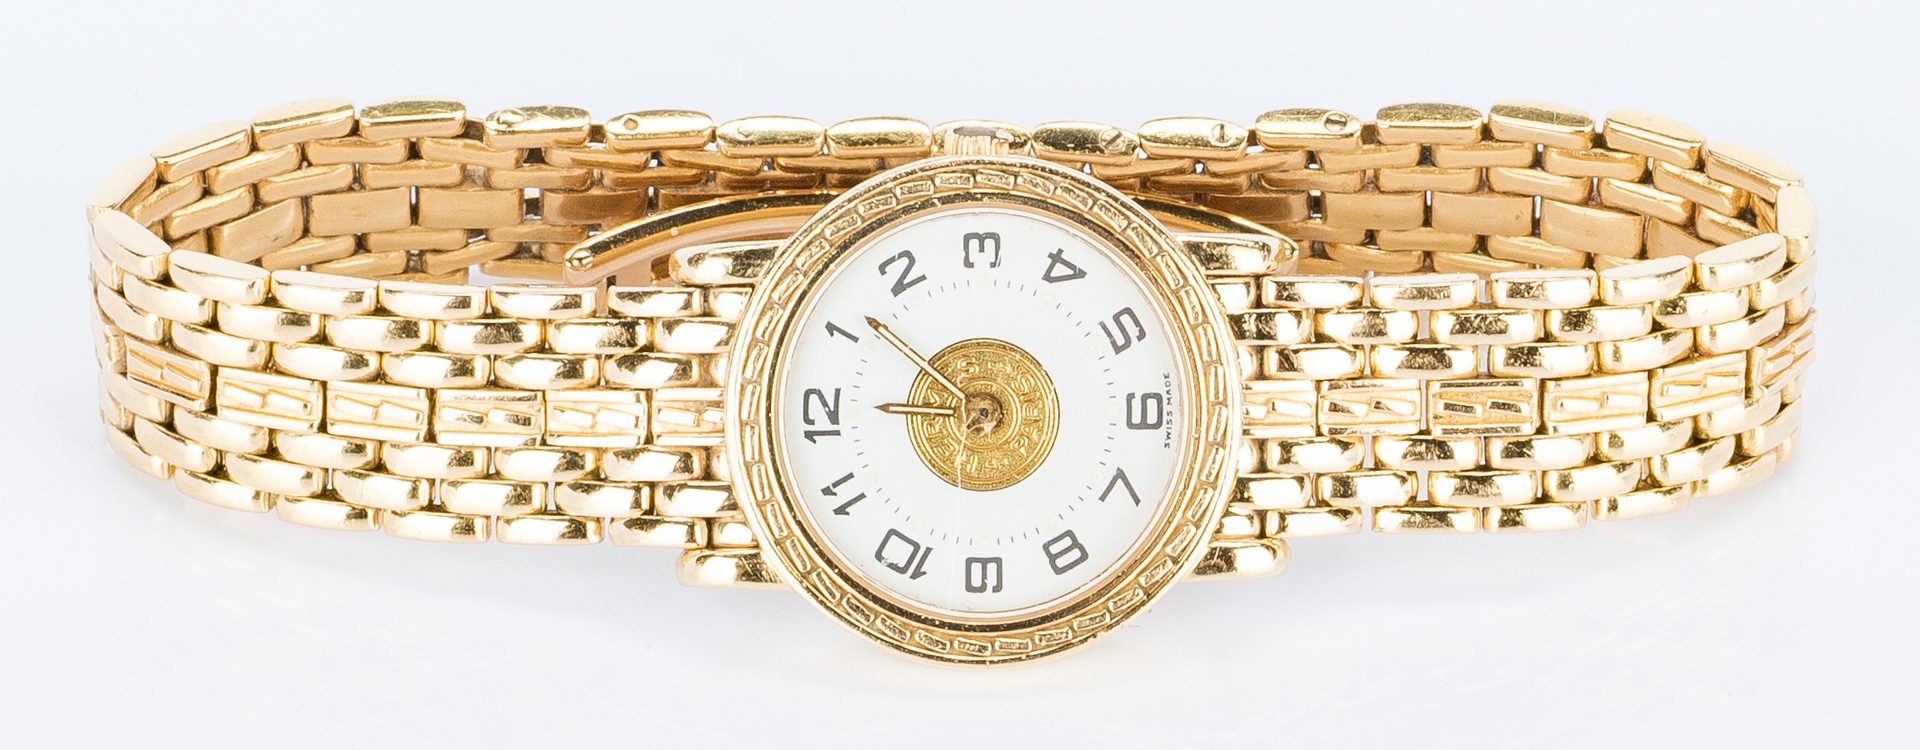 Lot 394: Lady's 18k Hermes Sellier Wrist Watch